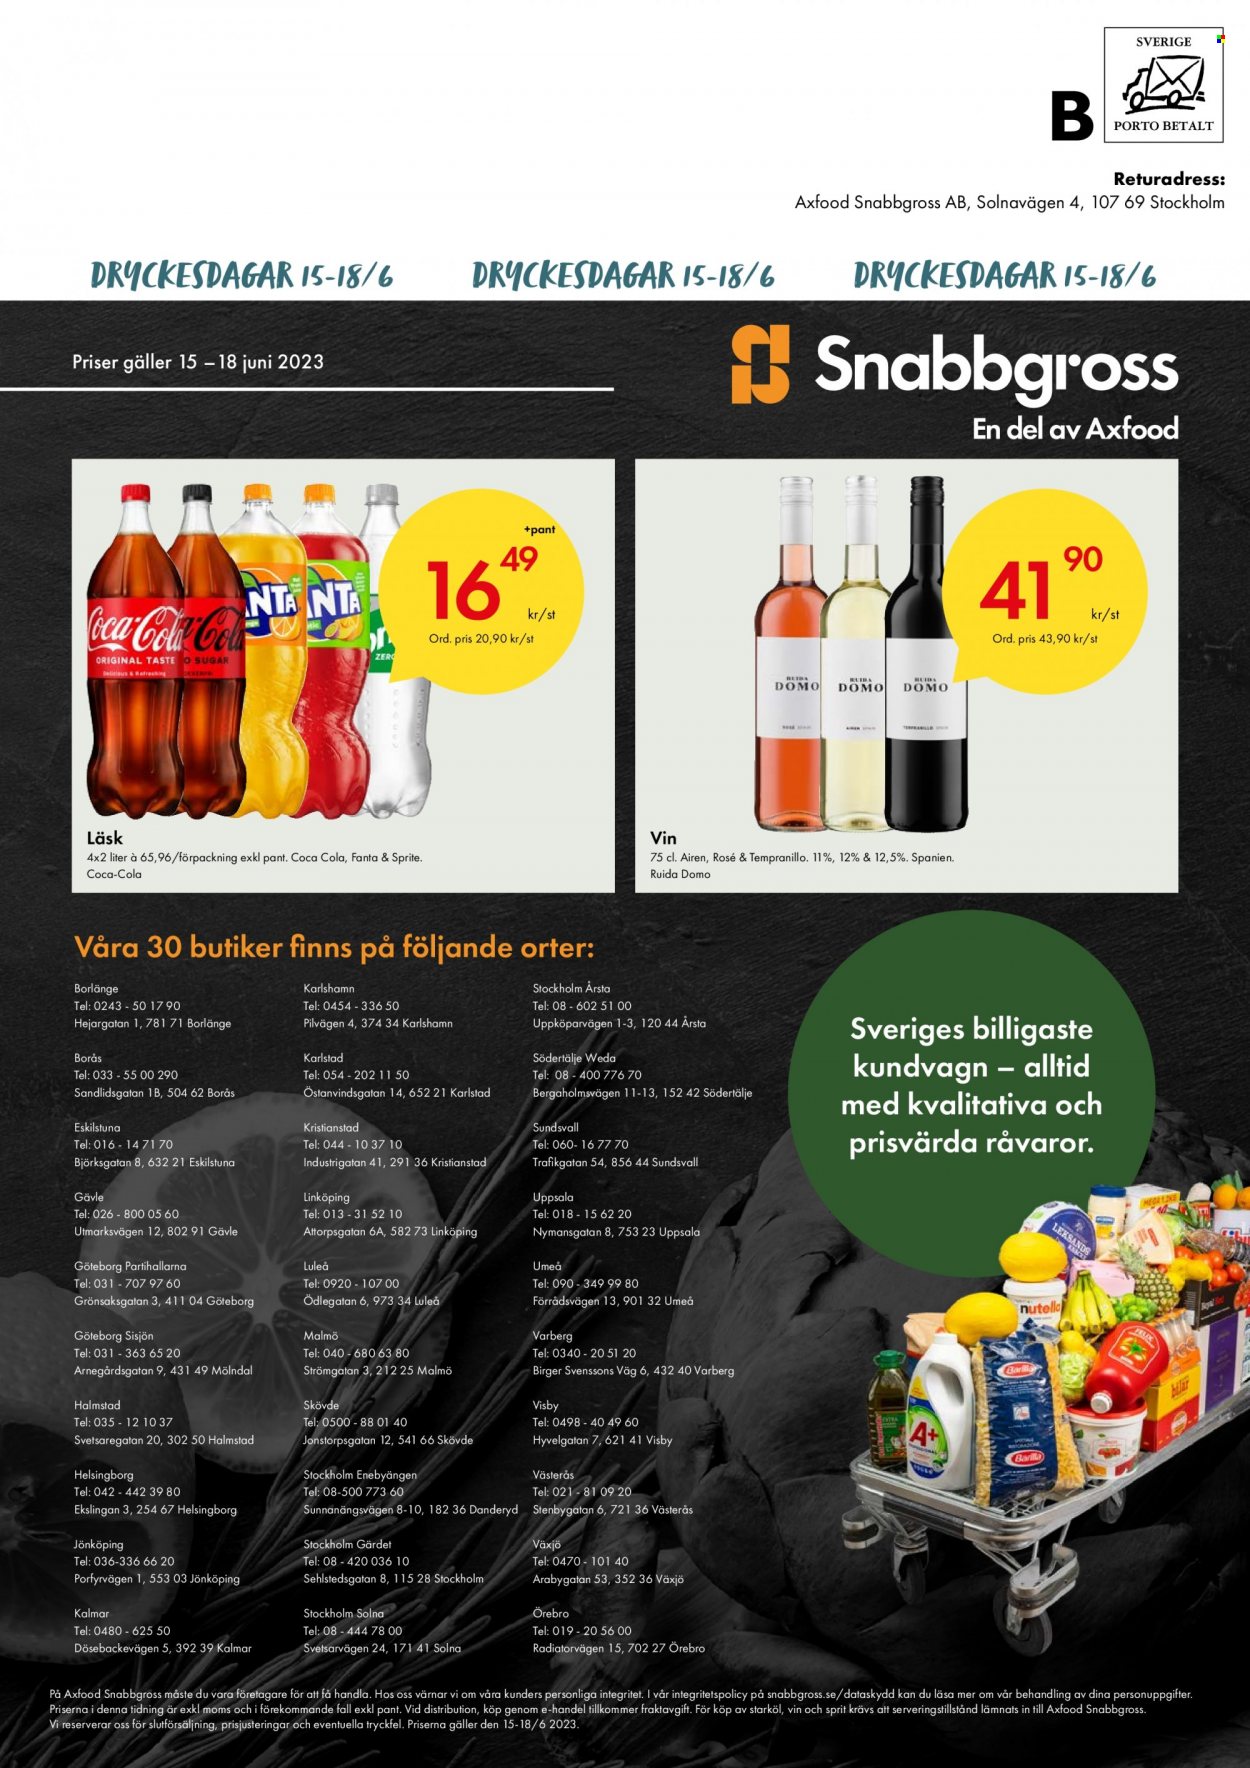 thumbnail - Axfood Snabbgross reklamblad - 15/6 2023 - 18/6 2023 - varor från reklamblad - kalmar, Fanta, Sprite, Coca-Cola, vin. Sida 8.